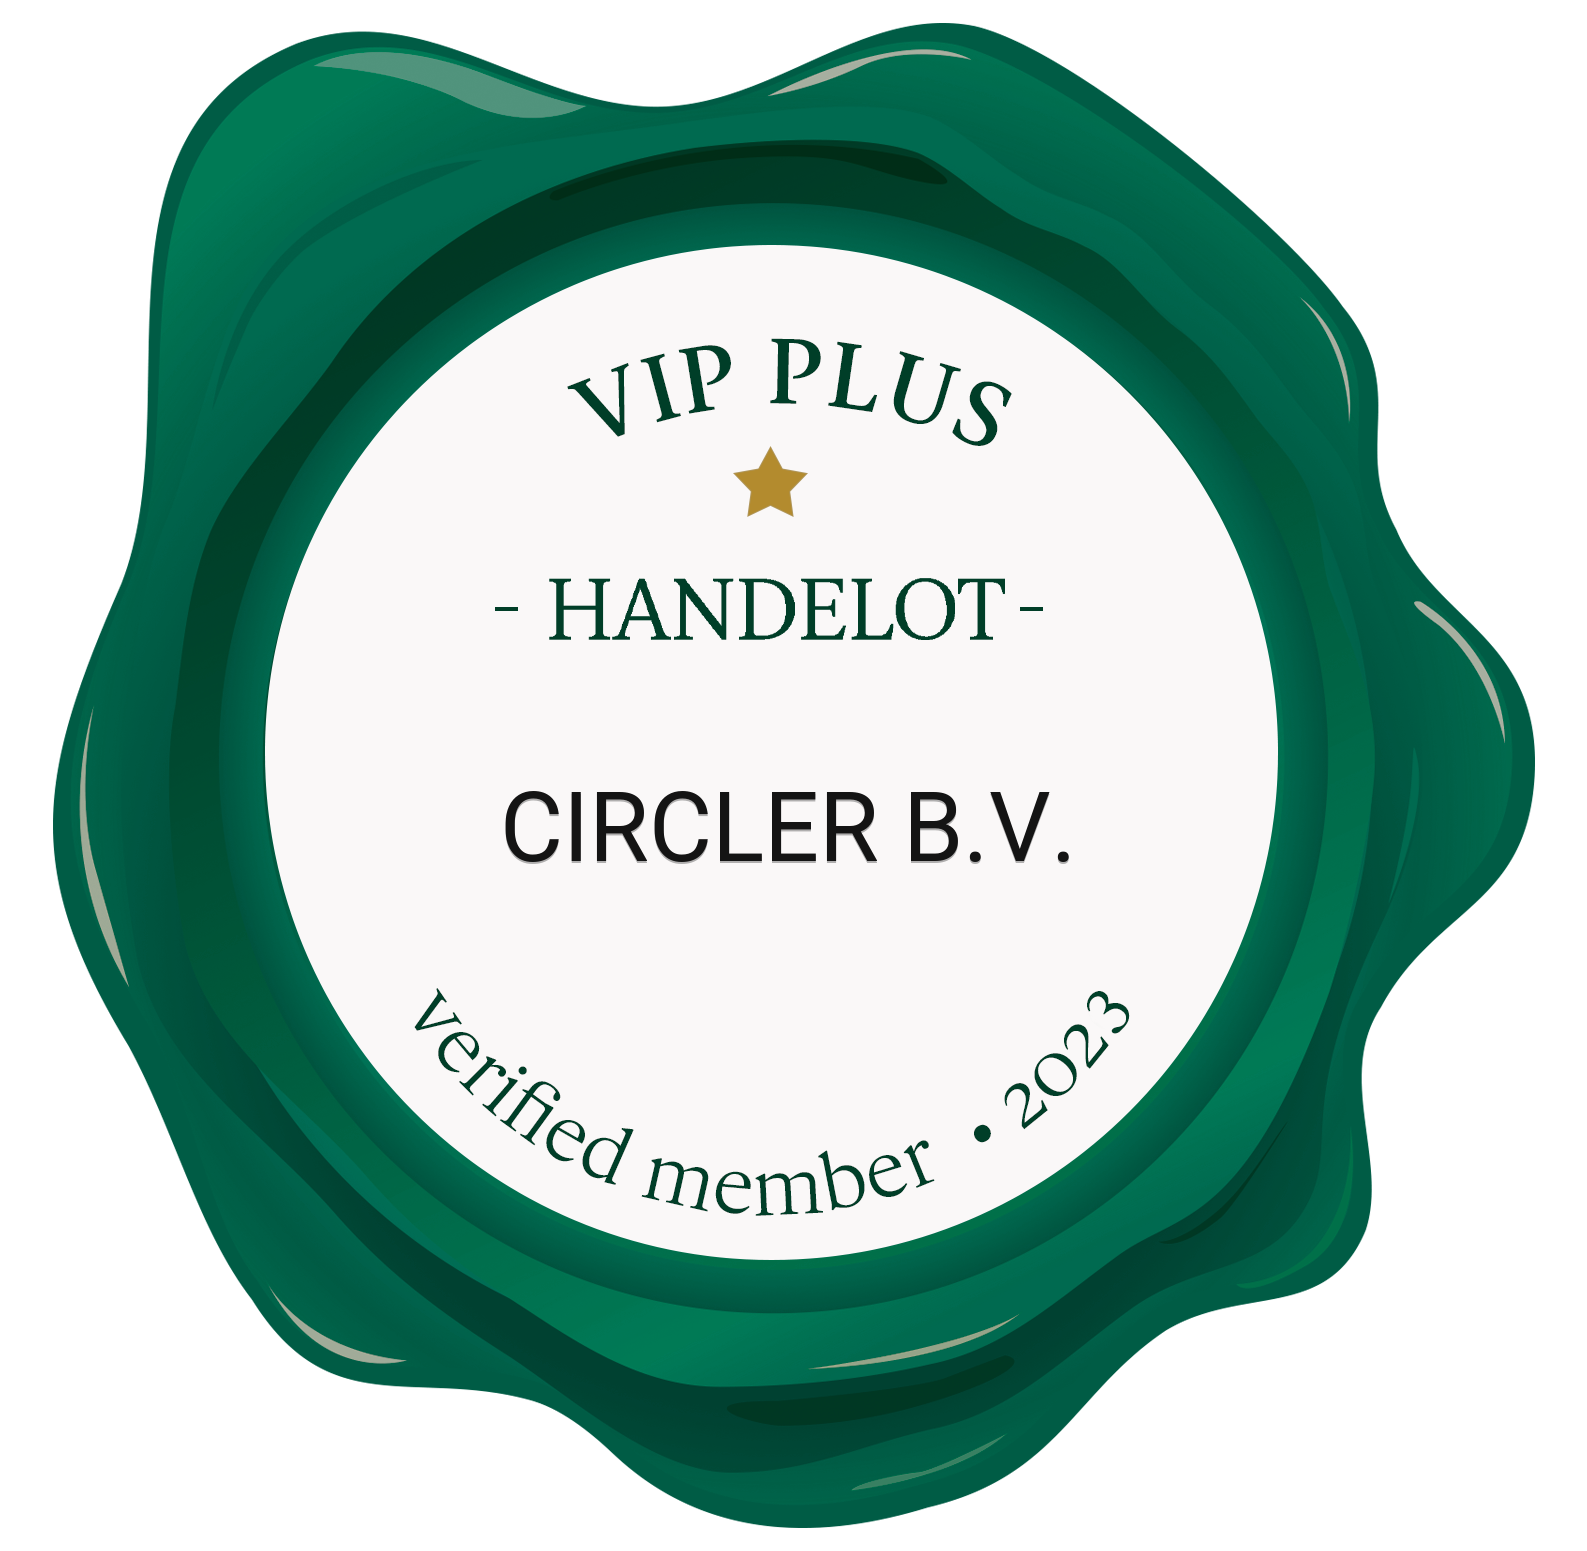 Circler B.V on Handelot